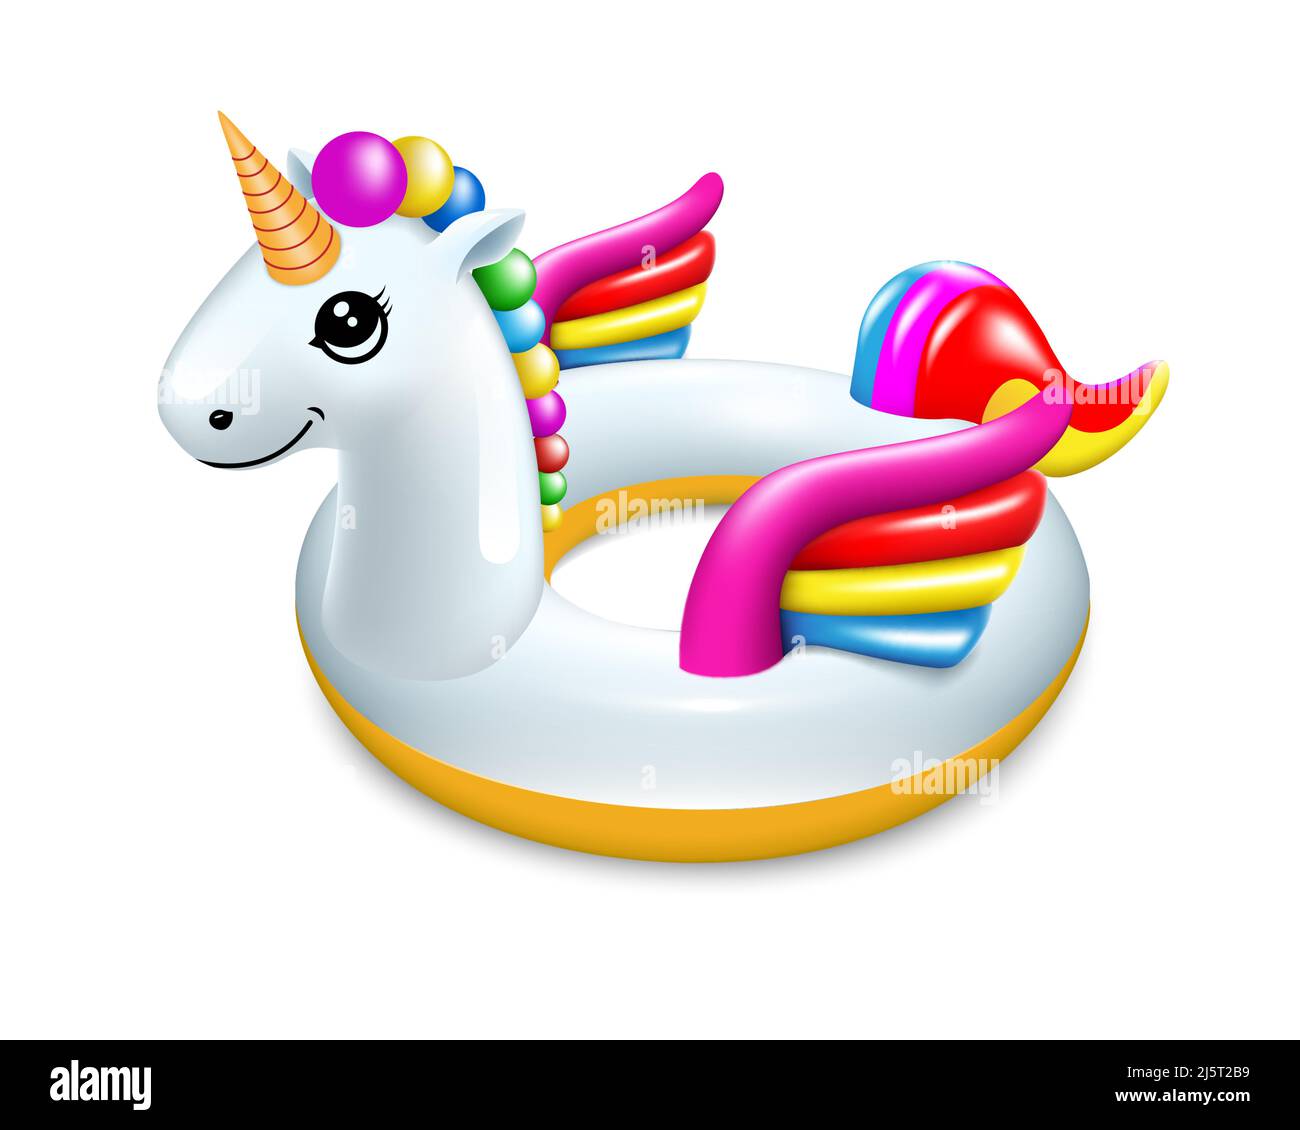 Flotador unicornio Imágenes vectoriales de stock - Página 2 - Alamy